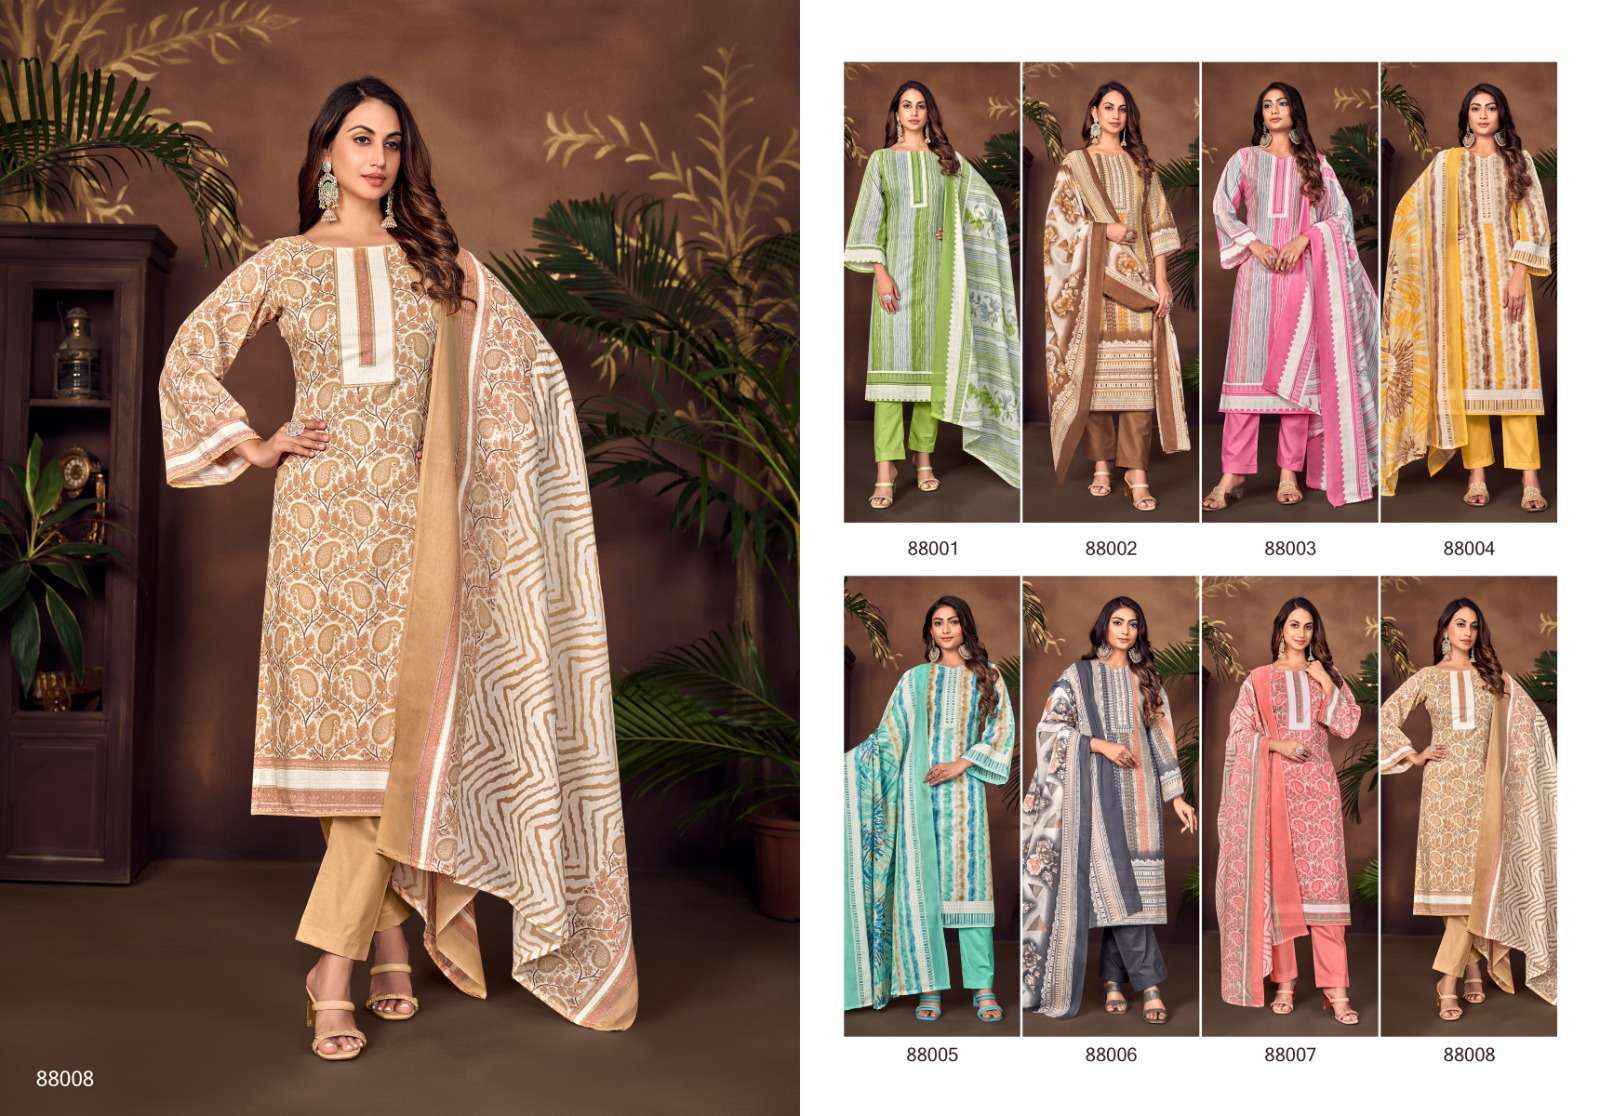 Skt Adhira Vol 6 Cotton Dress Material 8 pcs Catalogue